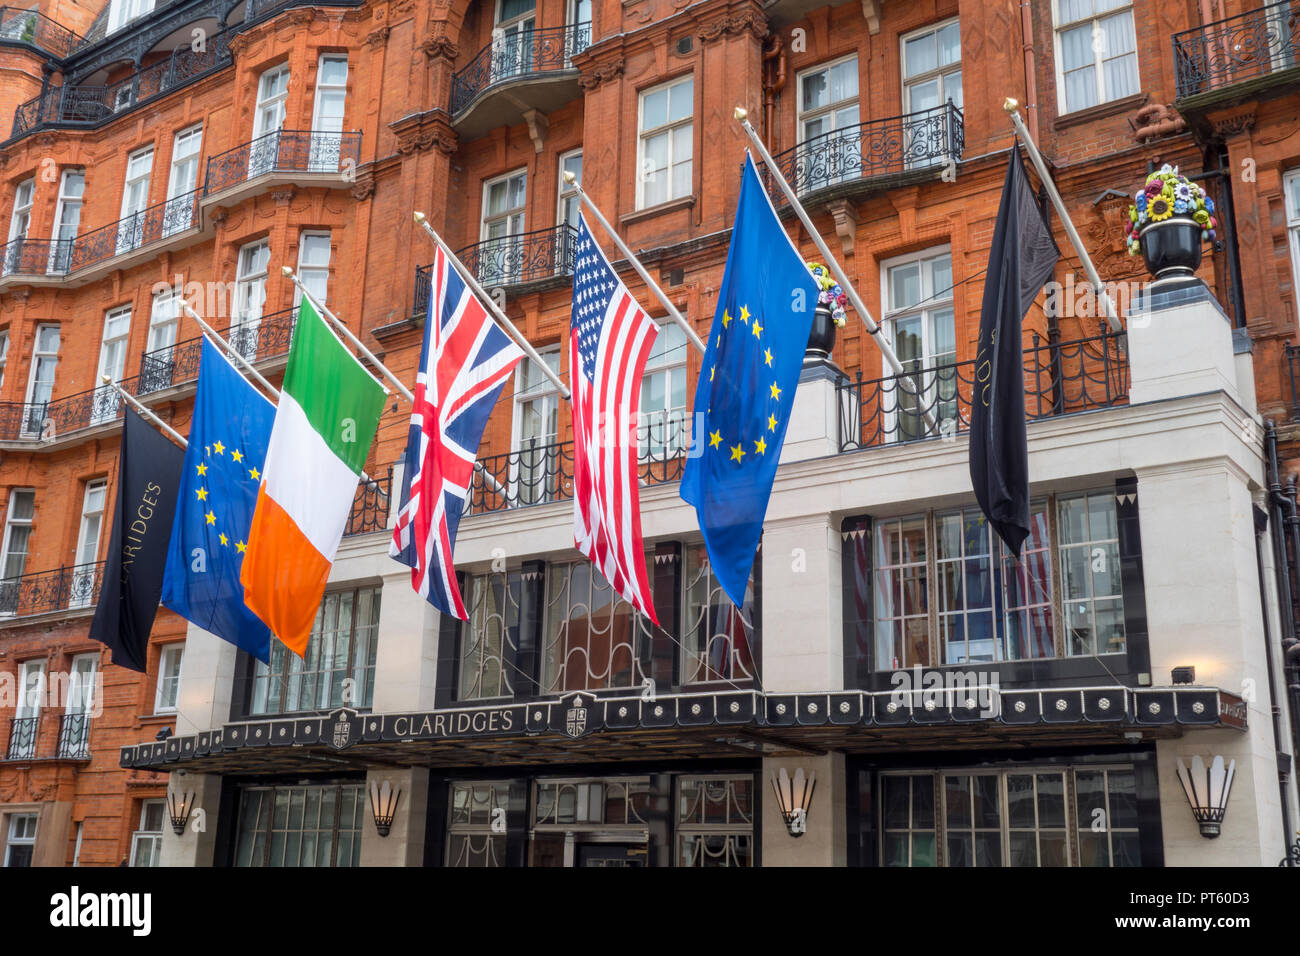 Internationale Flaggen vor dem Eingang und Fassade zu Claridges hotel Gebäude, Mayfair, Westminster, London, UK Stockfoto